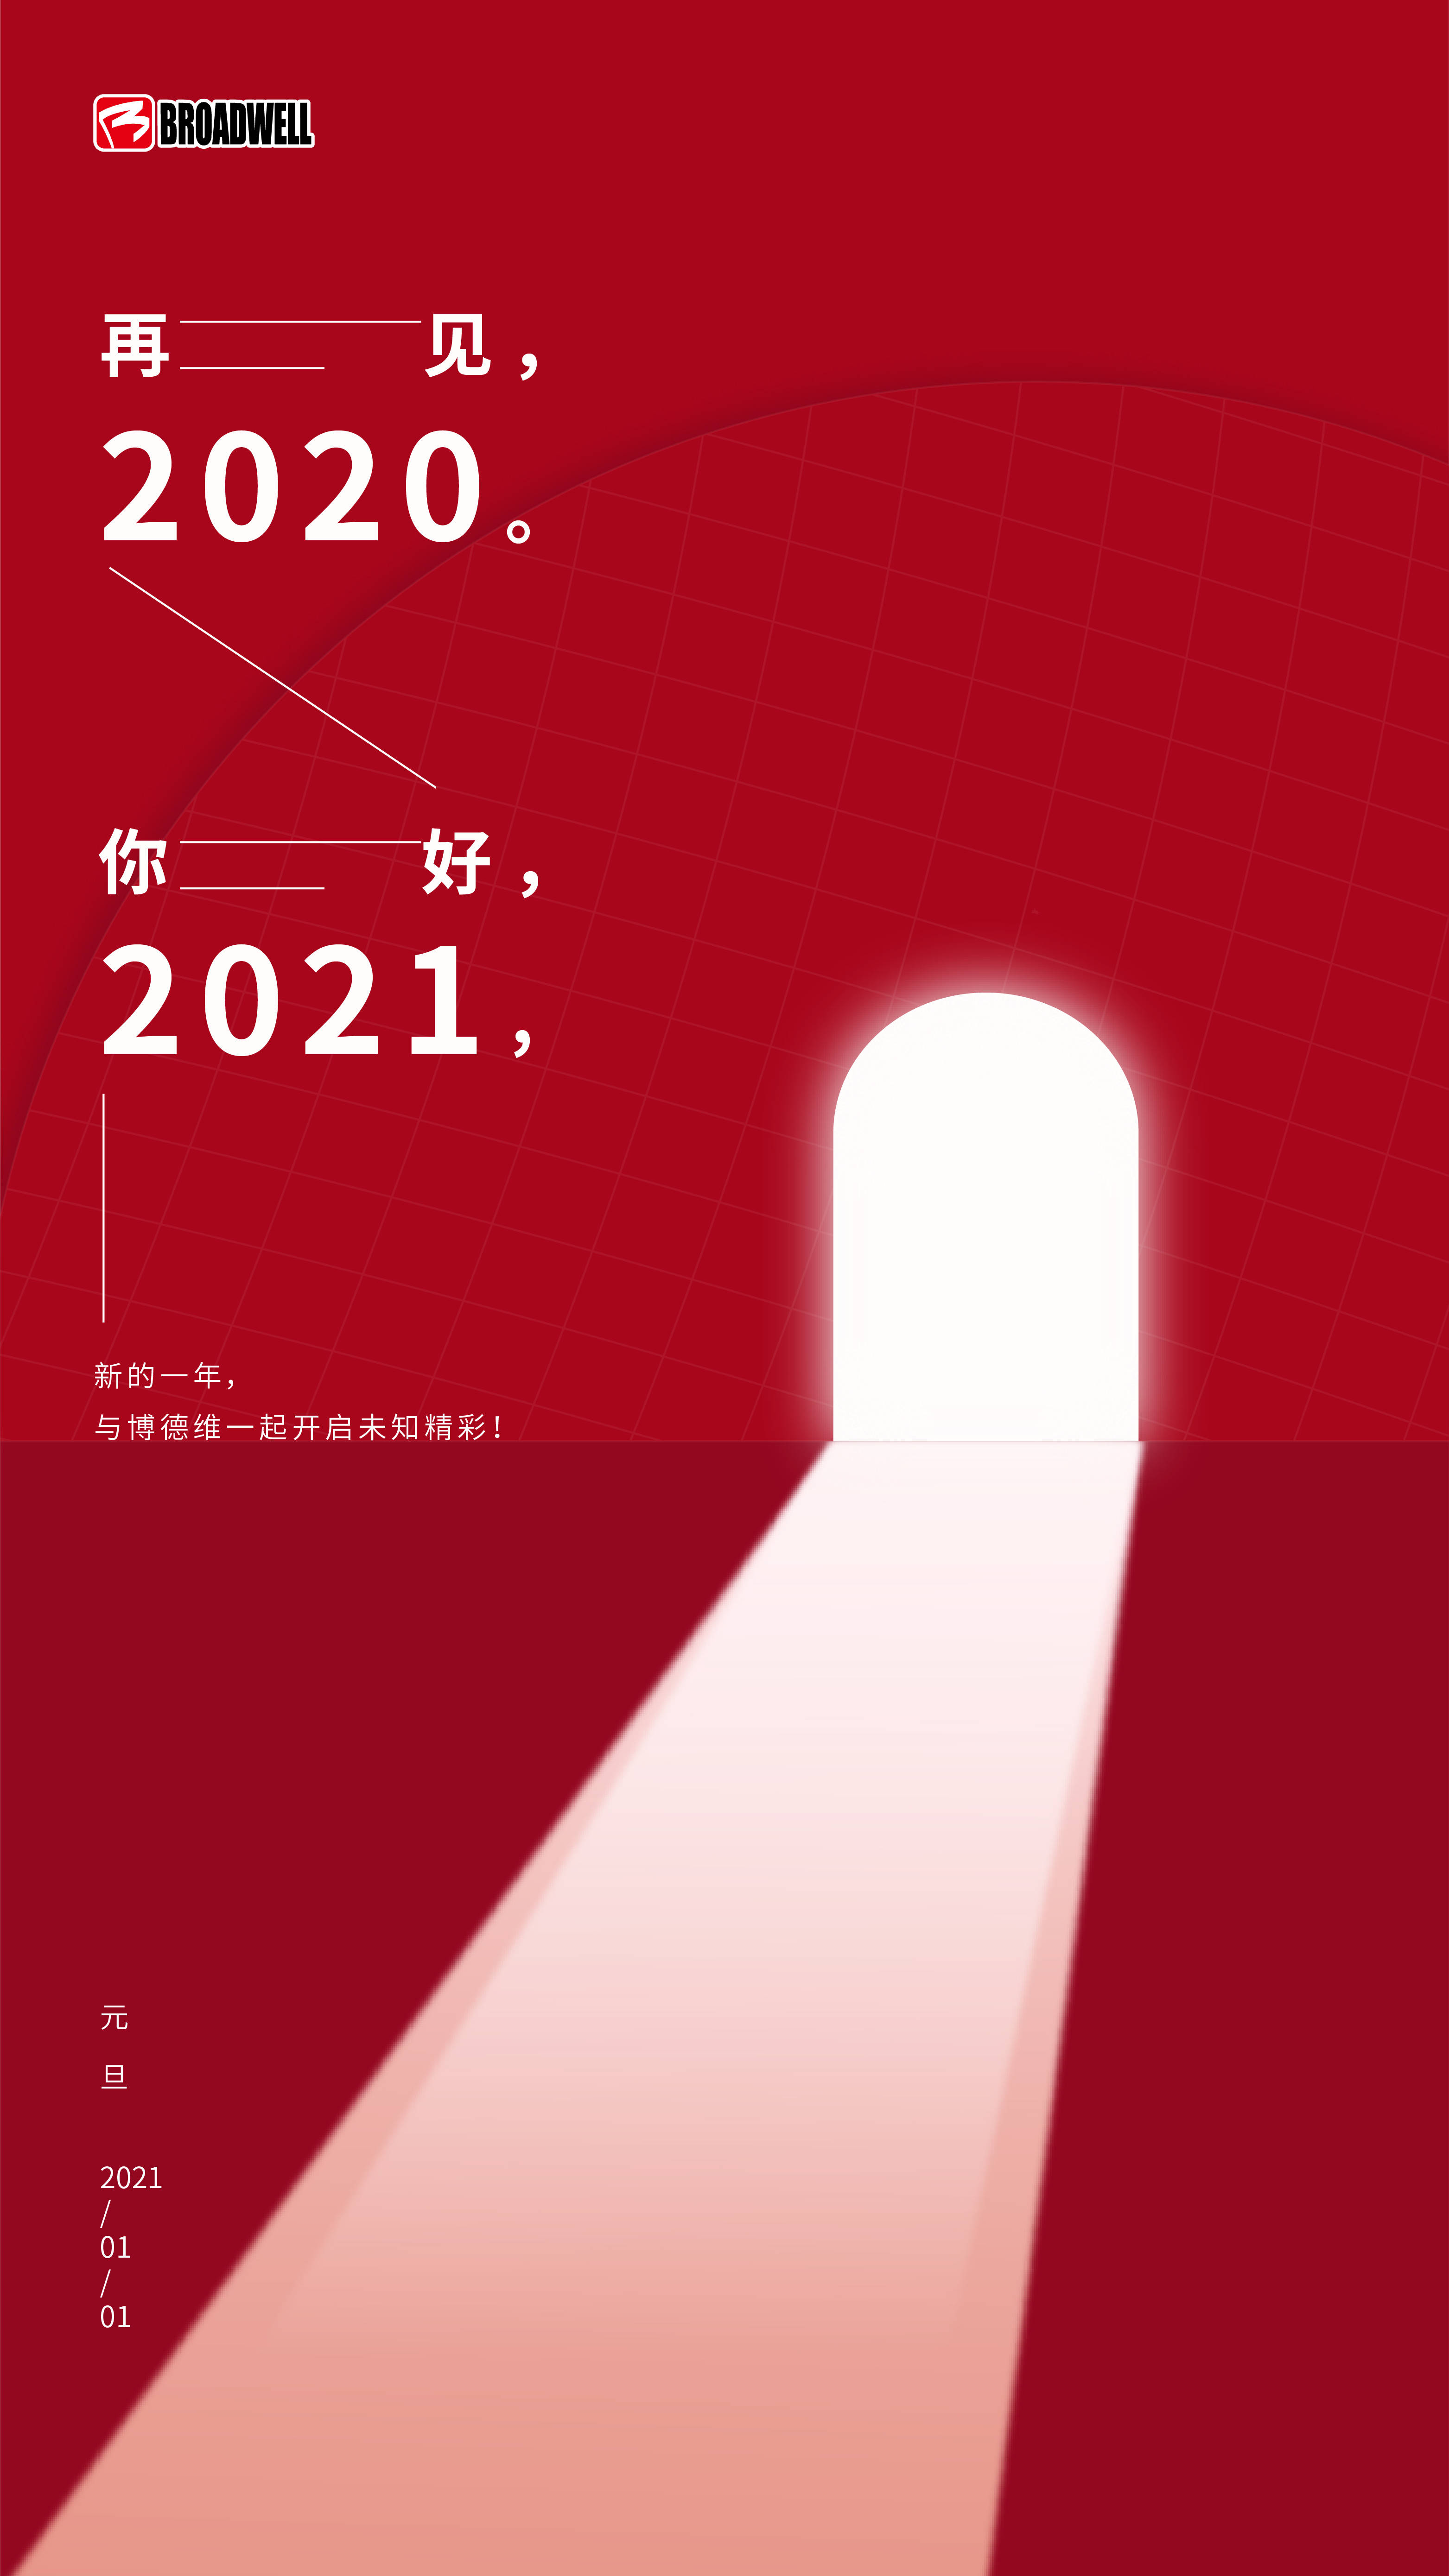 再见2020你好2021新的一年博德维与您一起开启未知的精彩